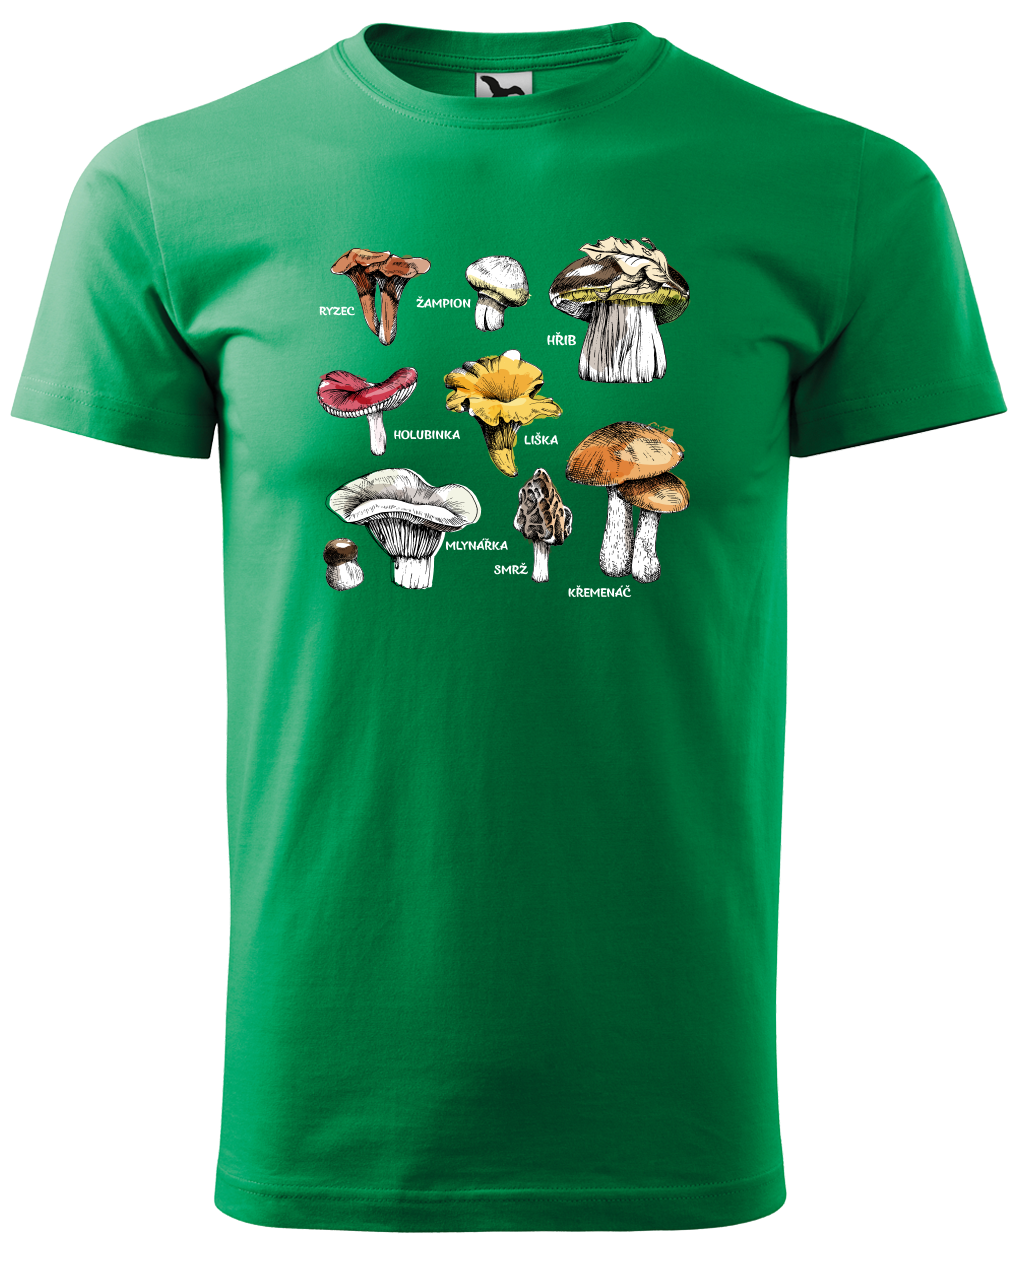 Tričko s houbami - Hřib, Křemenáč a další Velikost: L, Barva: Středně zelená (16)